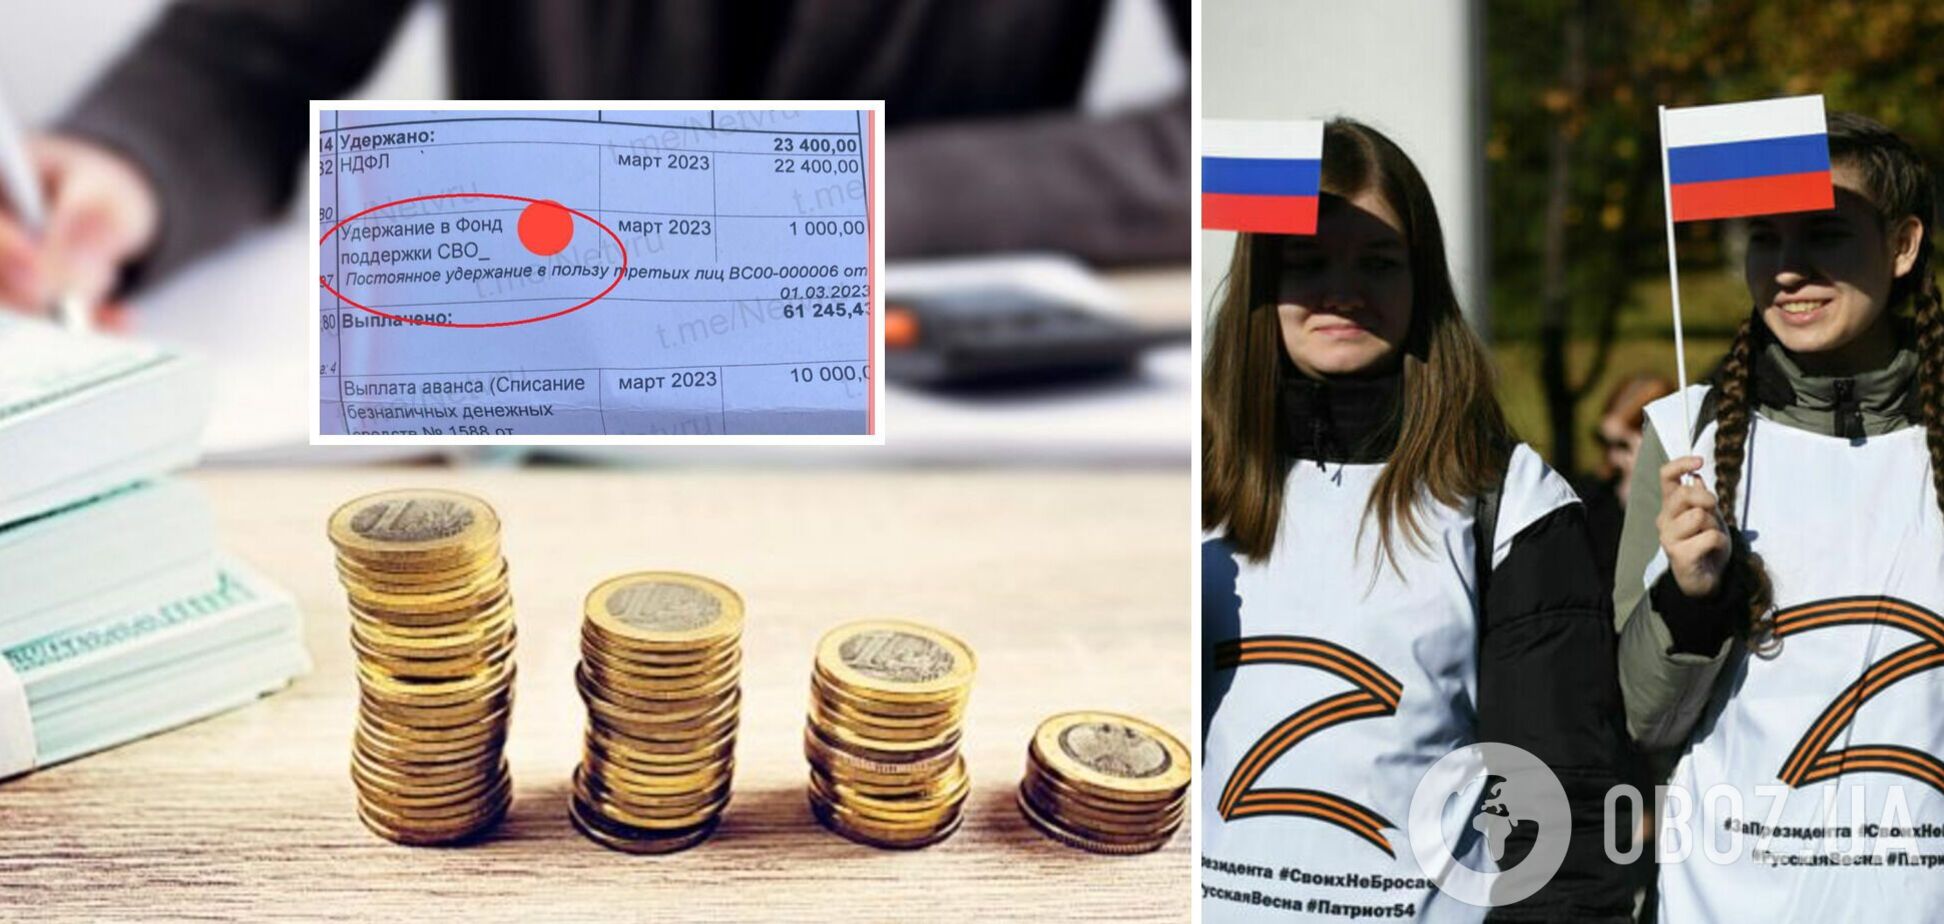 В РФ в некоторых регионах вводят налог в 'Фонд поддержки СВО'